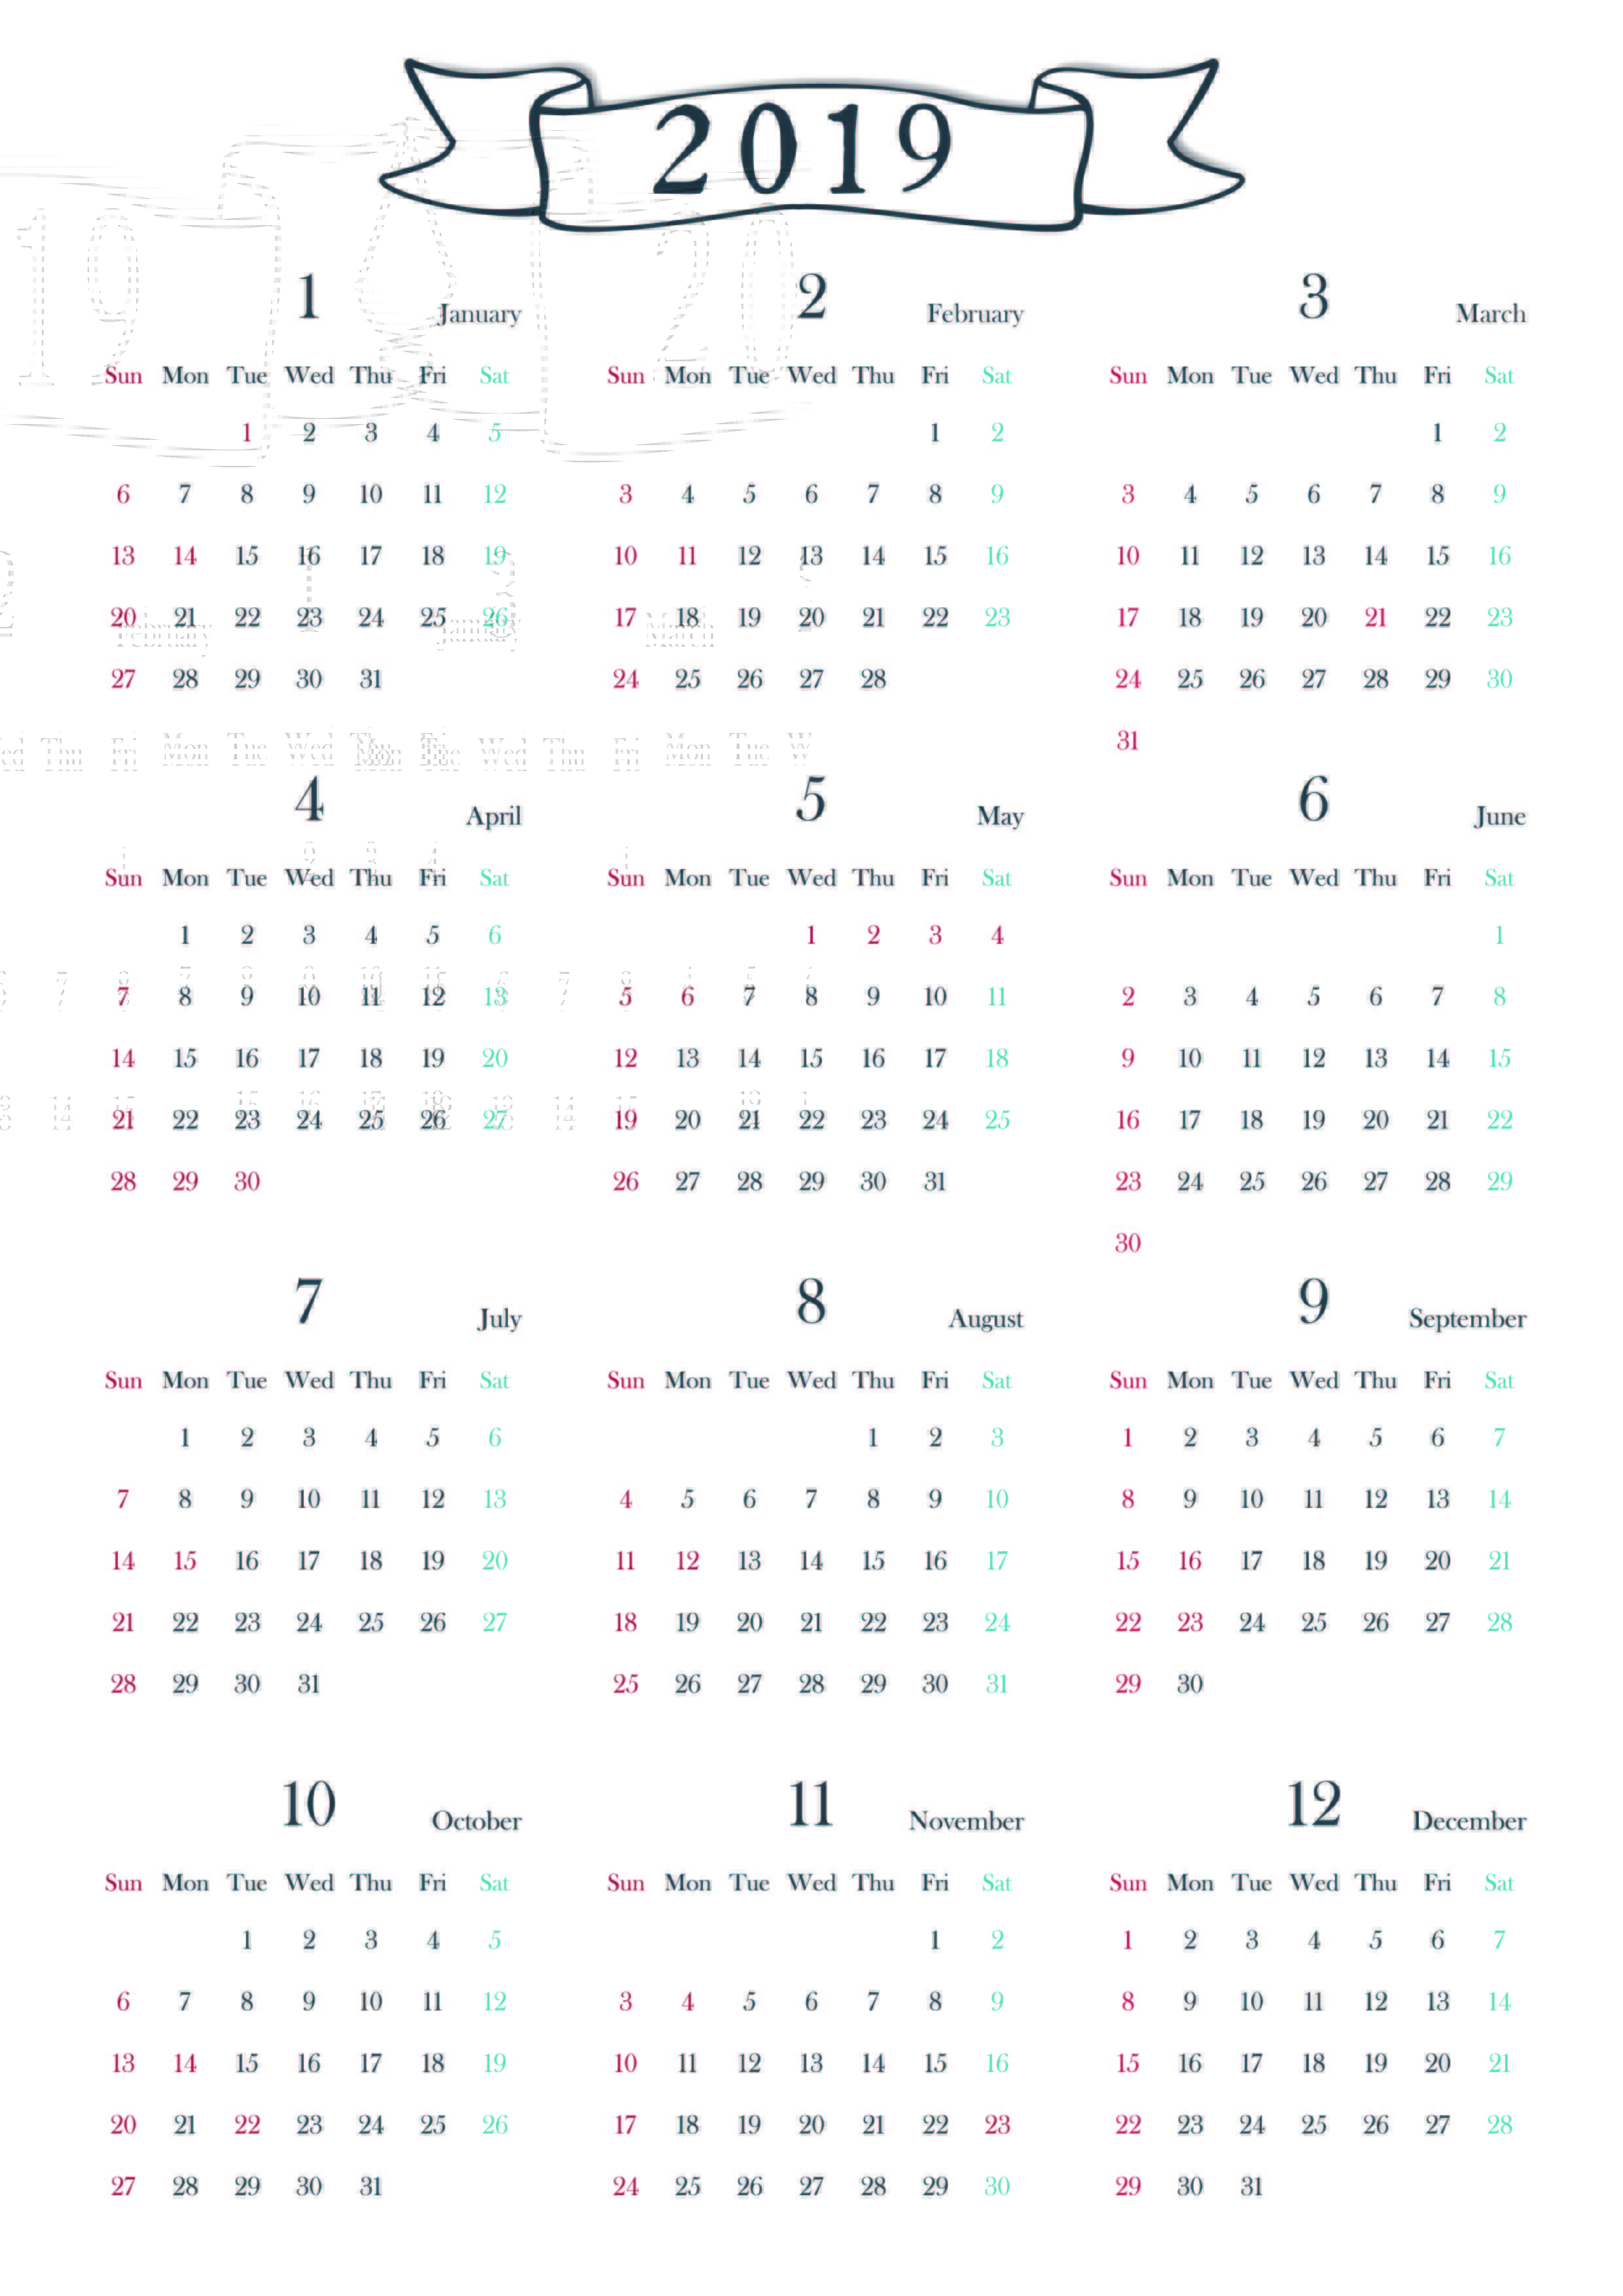 No 縦向きの1月から12月までの1年間分を入れた年間カレンダー Blair